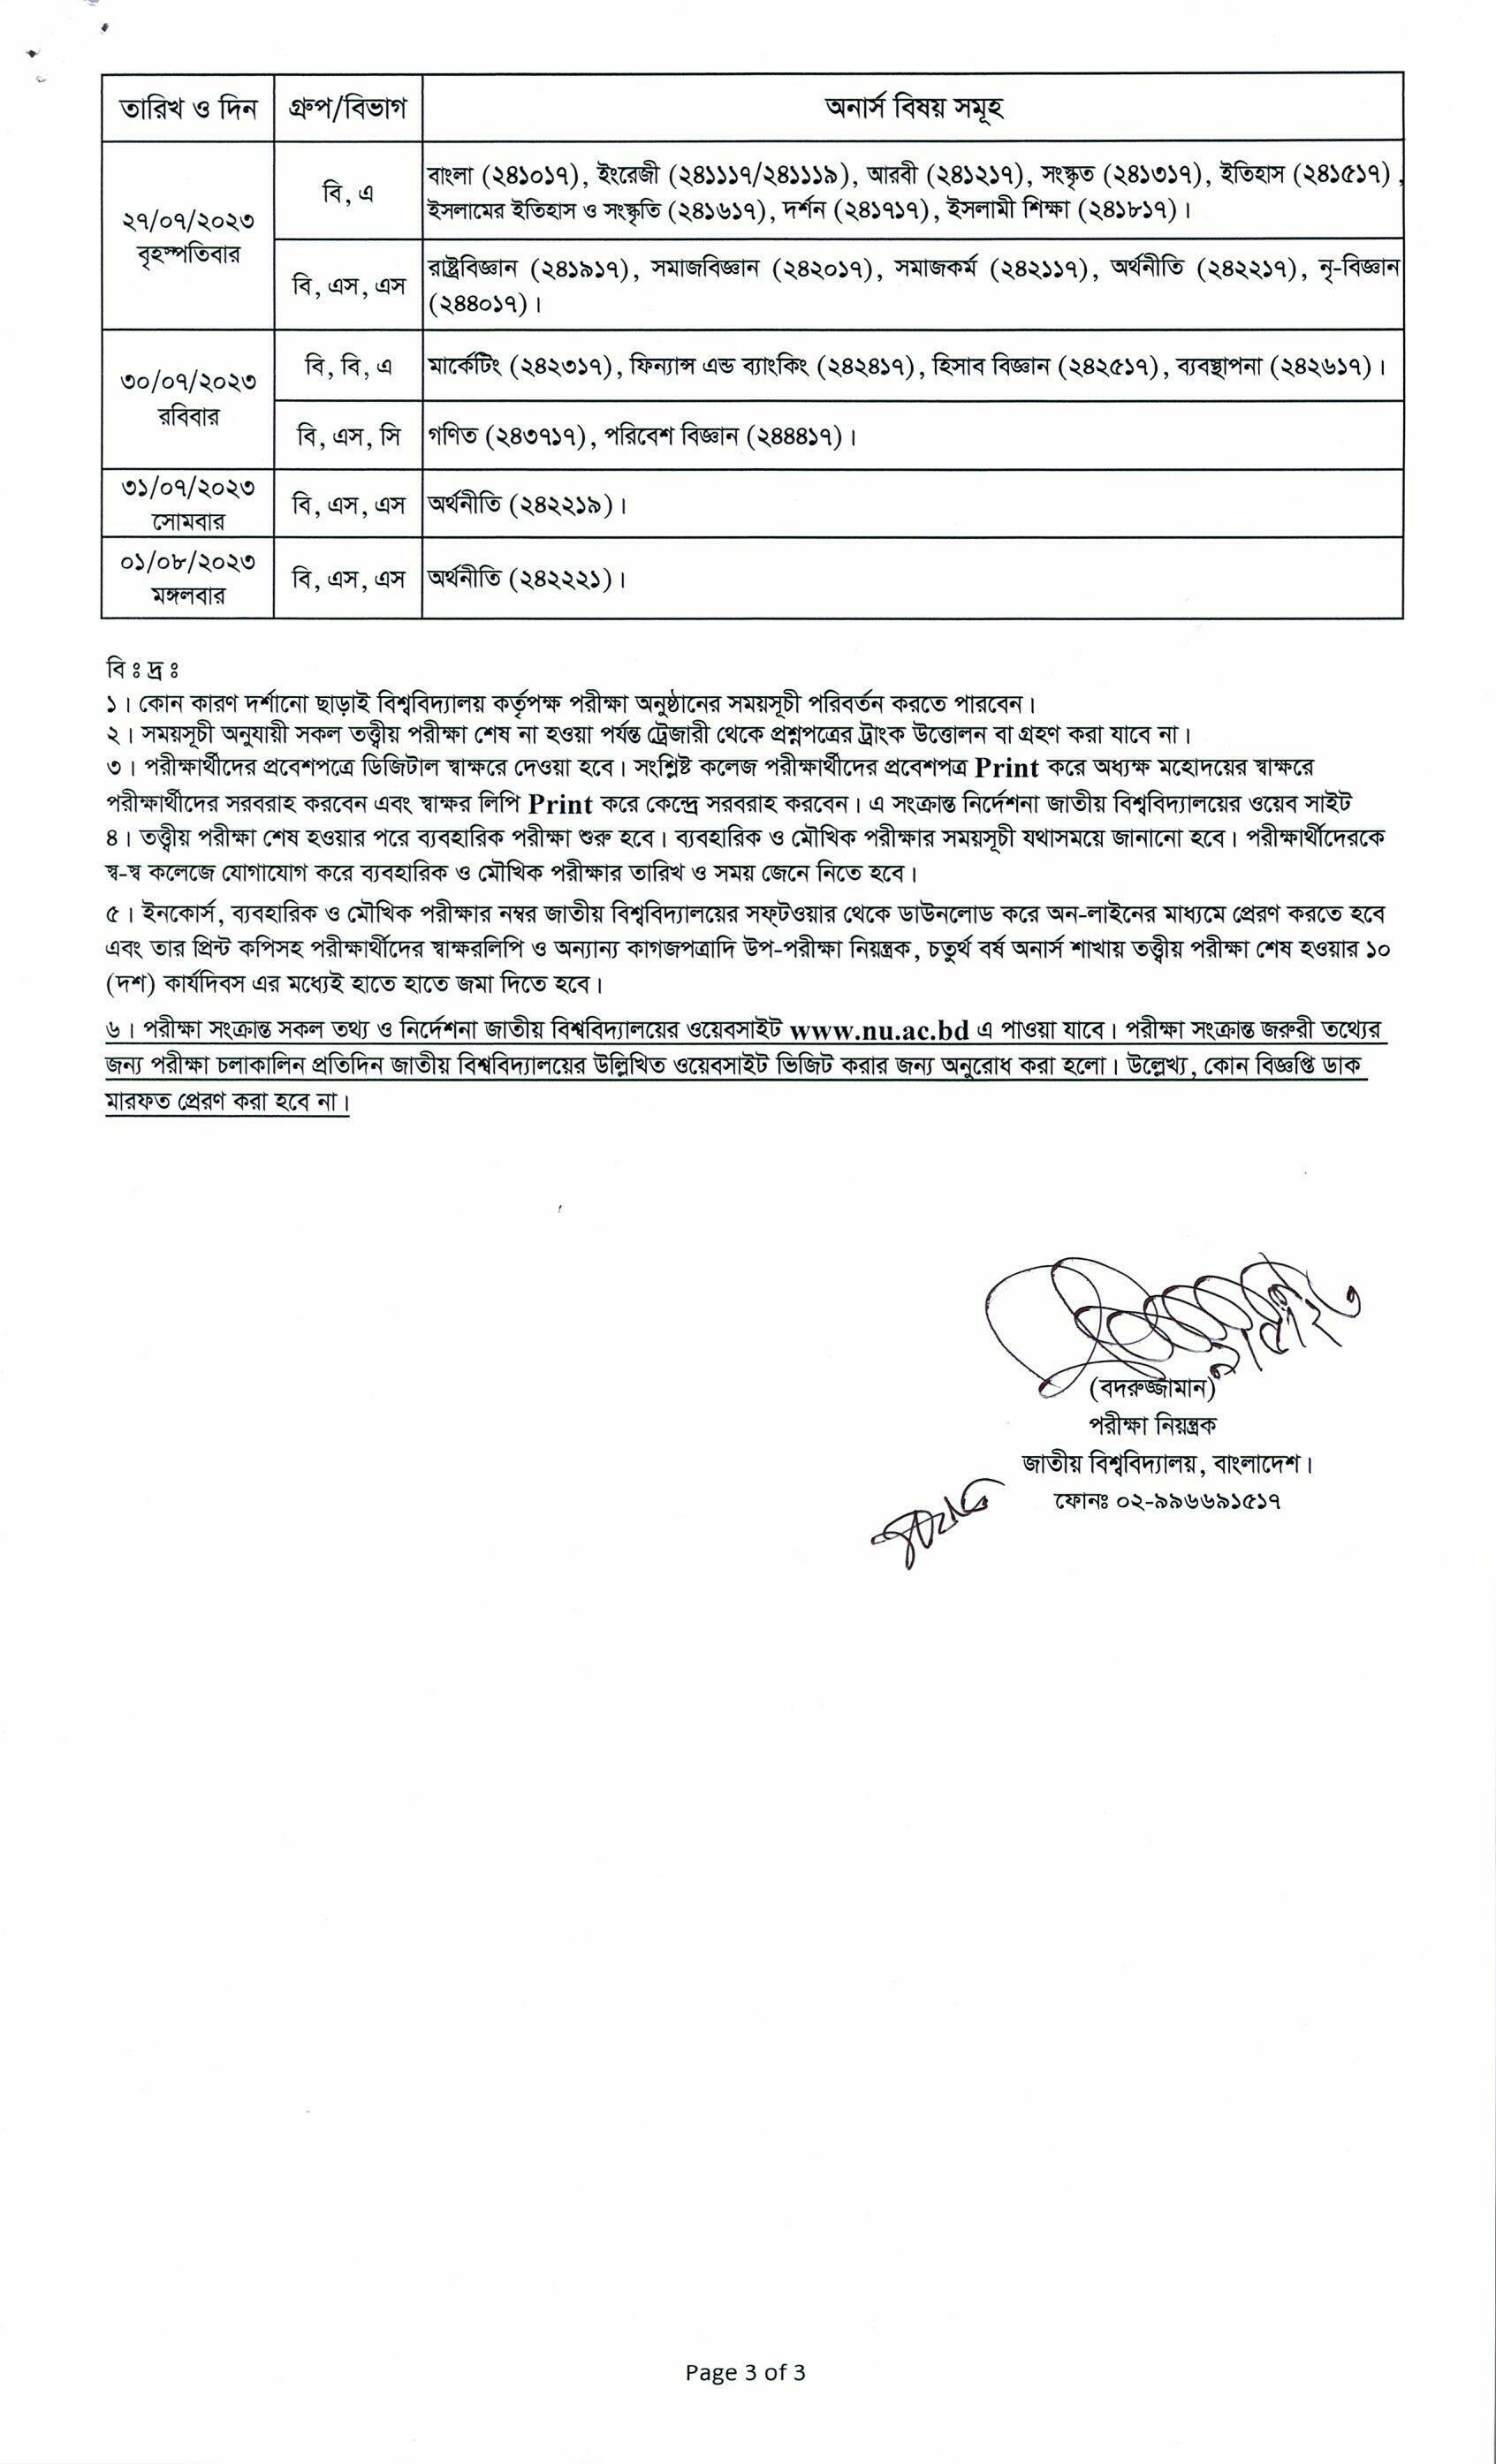 ২০২১ সালের অনার্স ৪র্থ বর্ষ পরীক্ষার রুটিন সময়সূচী পিডিএফ (পরীক্ষা ২০২৩) - 2021 Honours 4th Year Examination Routine (Exam 2023)